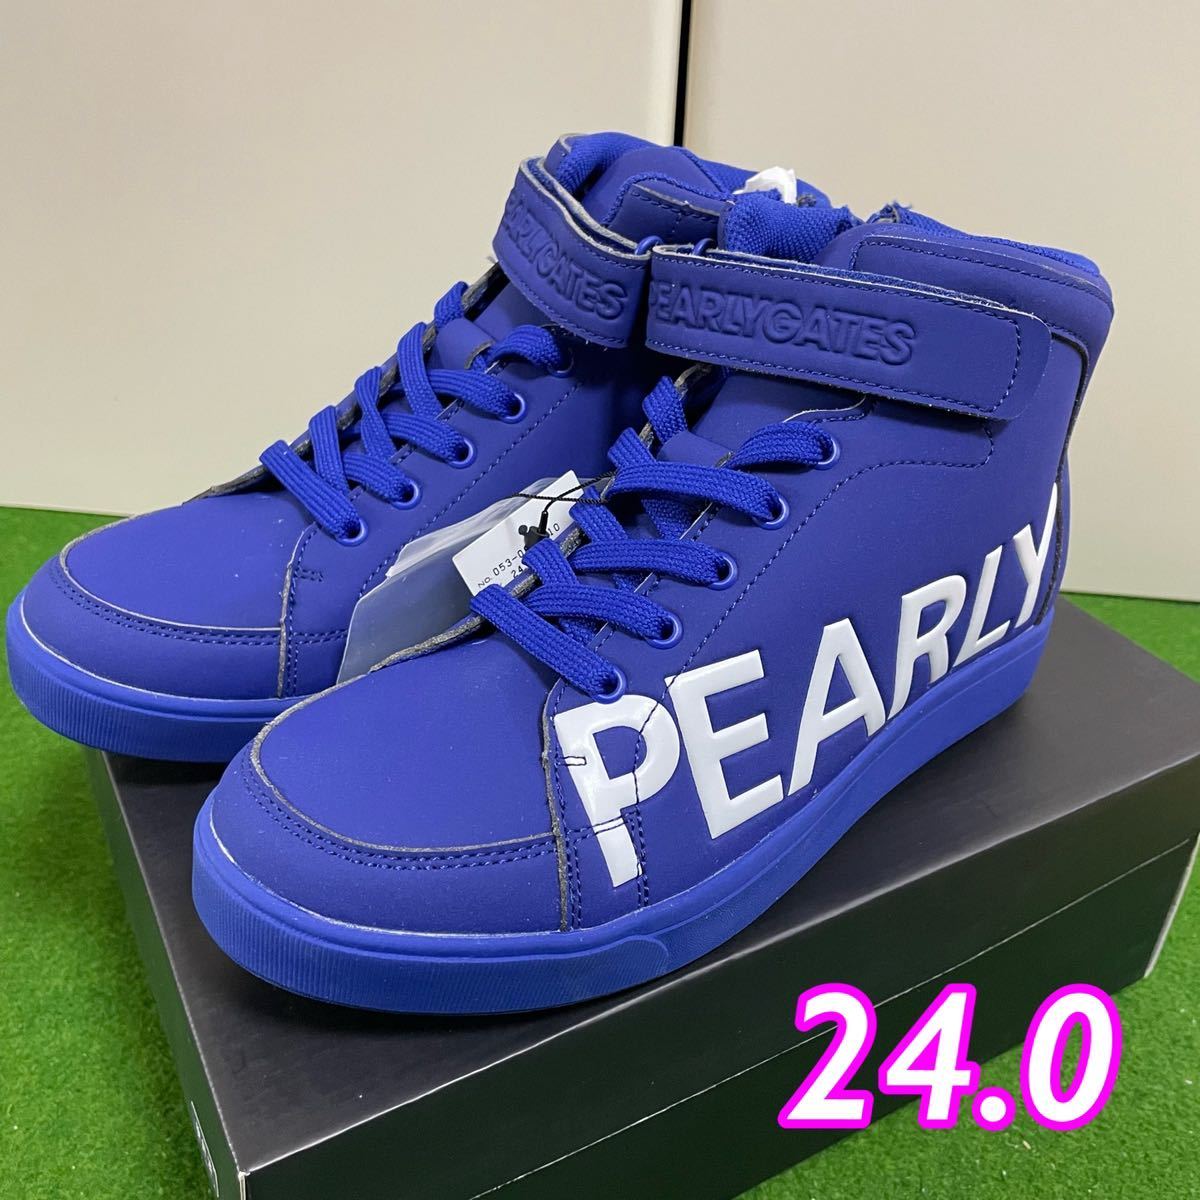 [ новый товар не использовался ]PEARLY GATES Pearly Gates * боковой Logo средний cut обувь 24.0cm туфли для гольфа голубой желтый цвет шиповки 